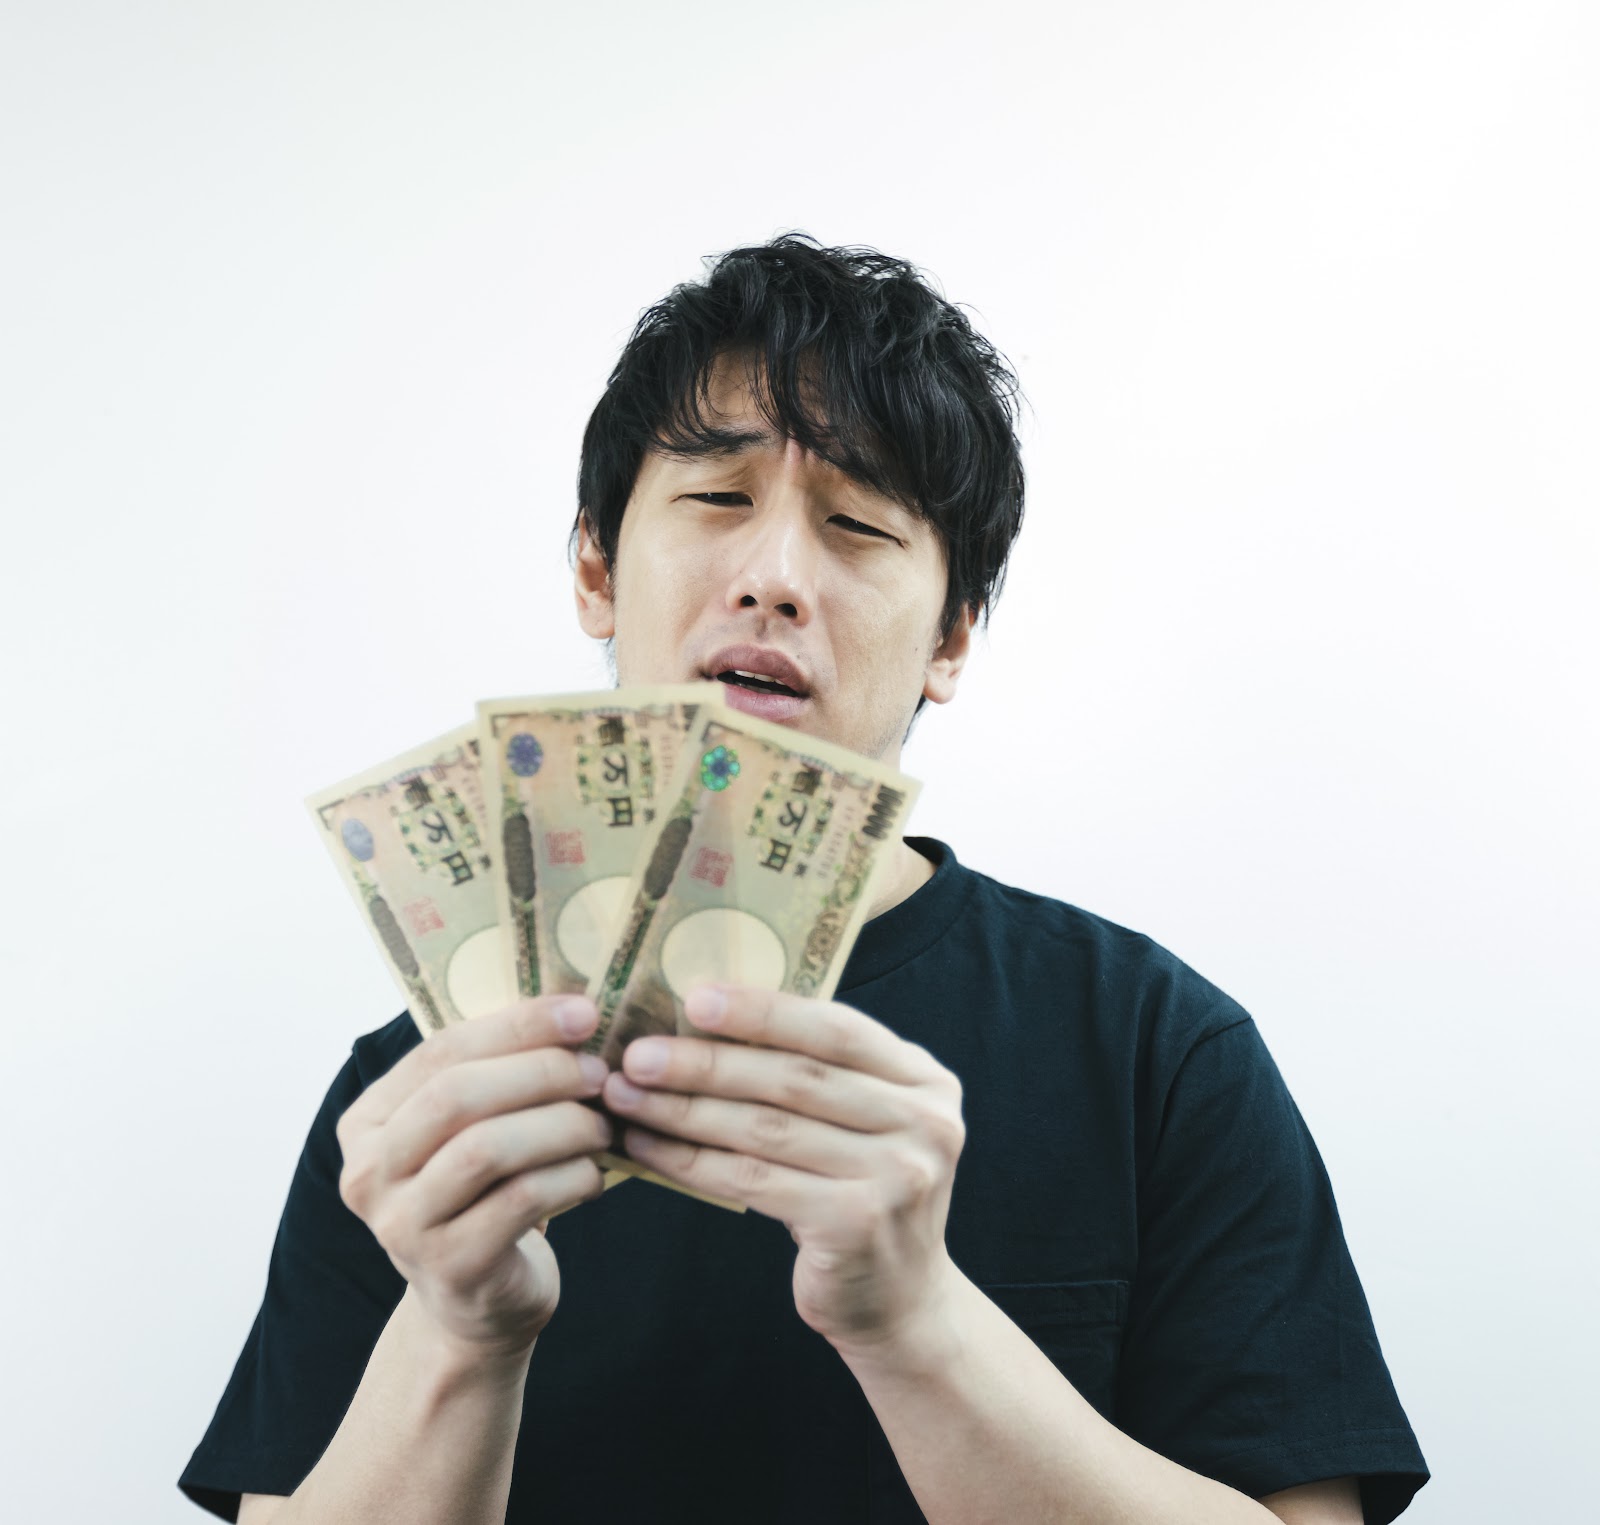 男性が三万円の紙幣を持って困った顔をしている